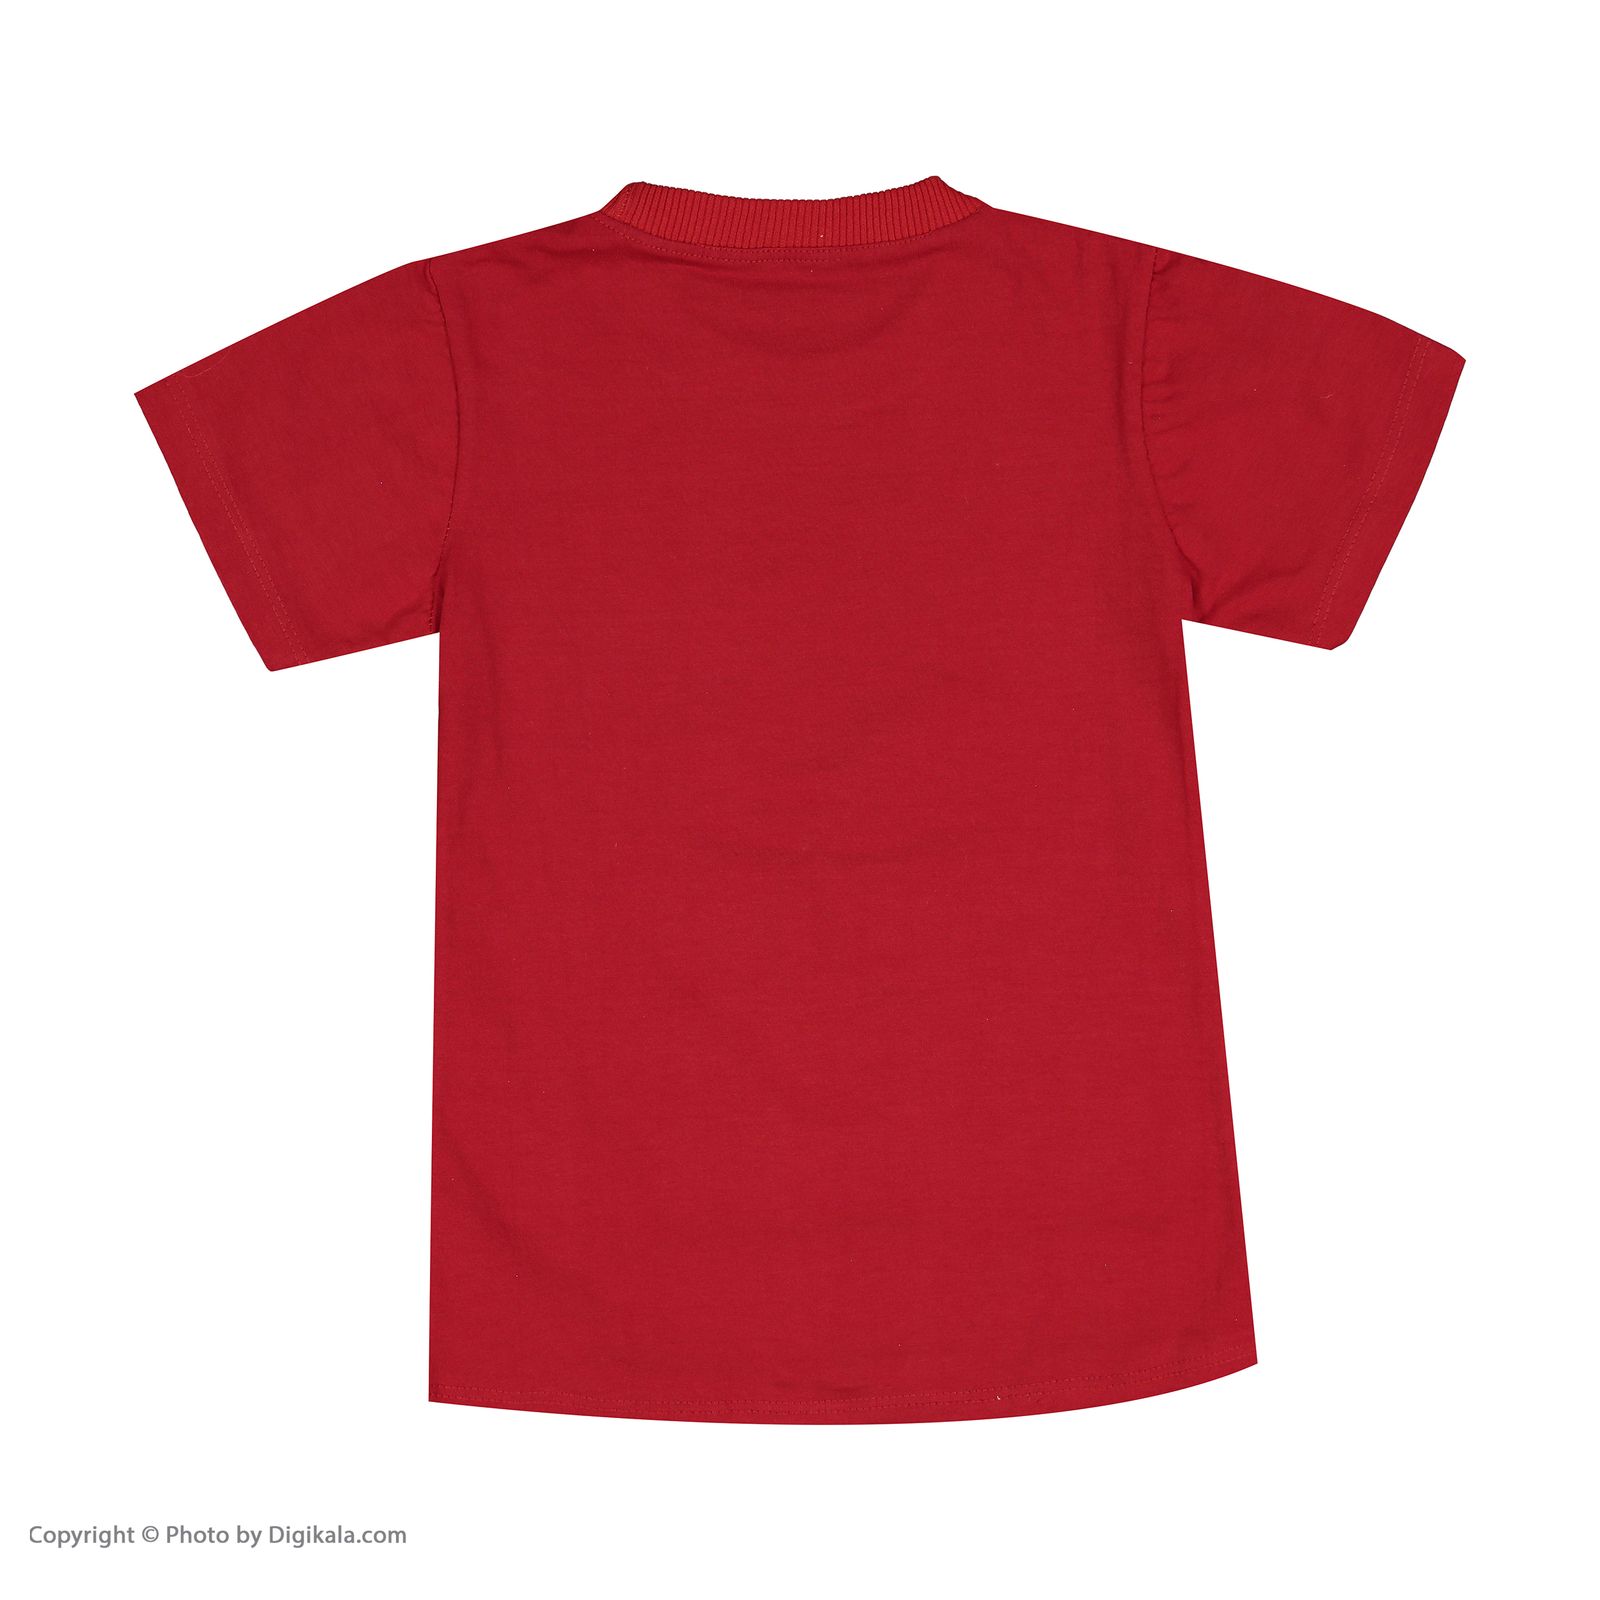 ست تی شرت و شلوارک دخترانه بانالی مدل بادکنک کد 3492 -  - 6